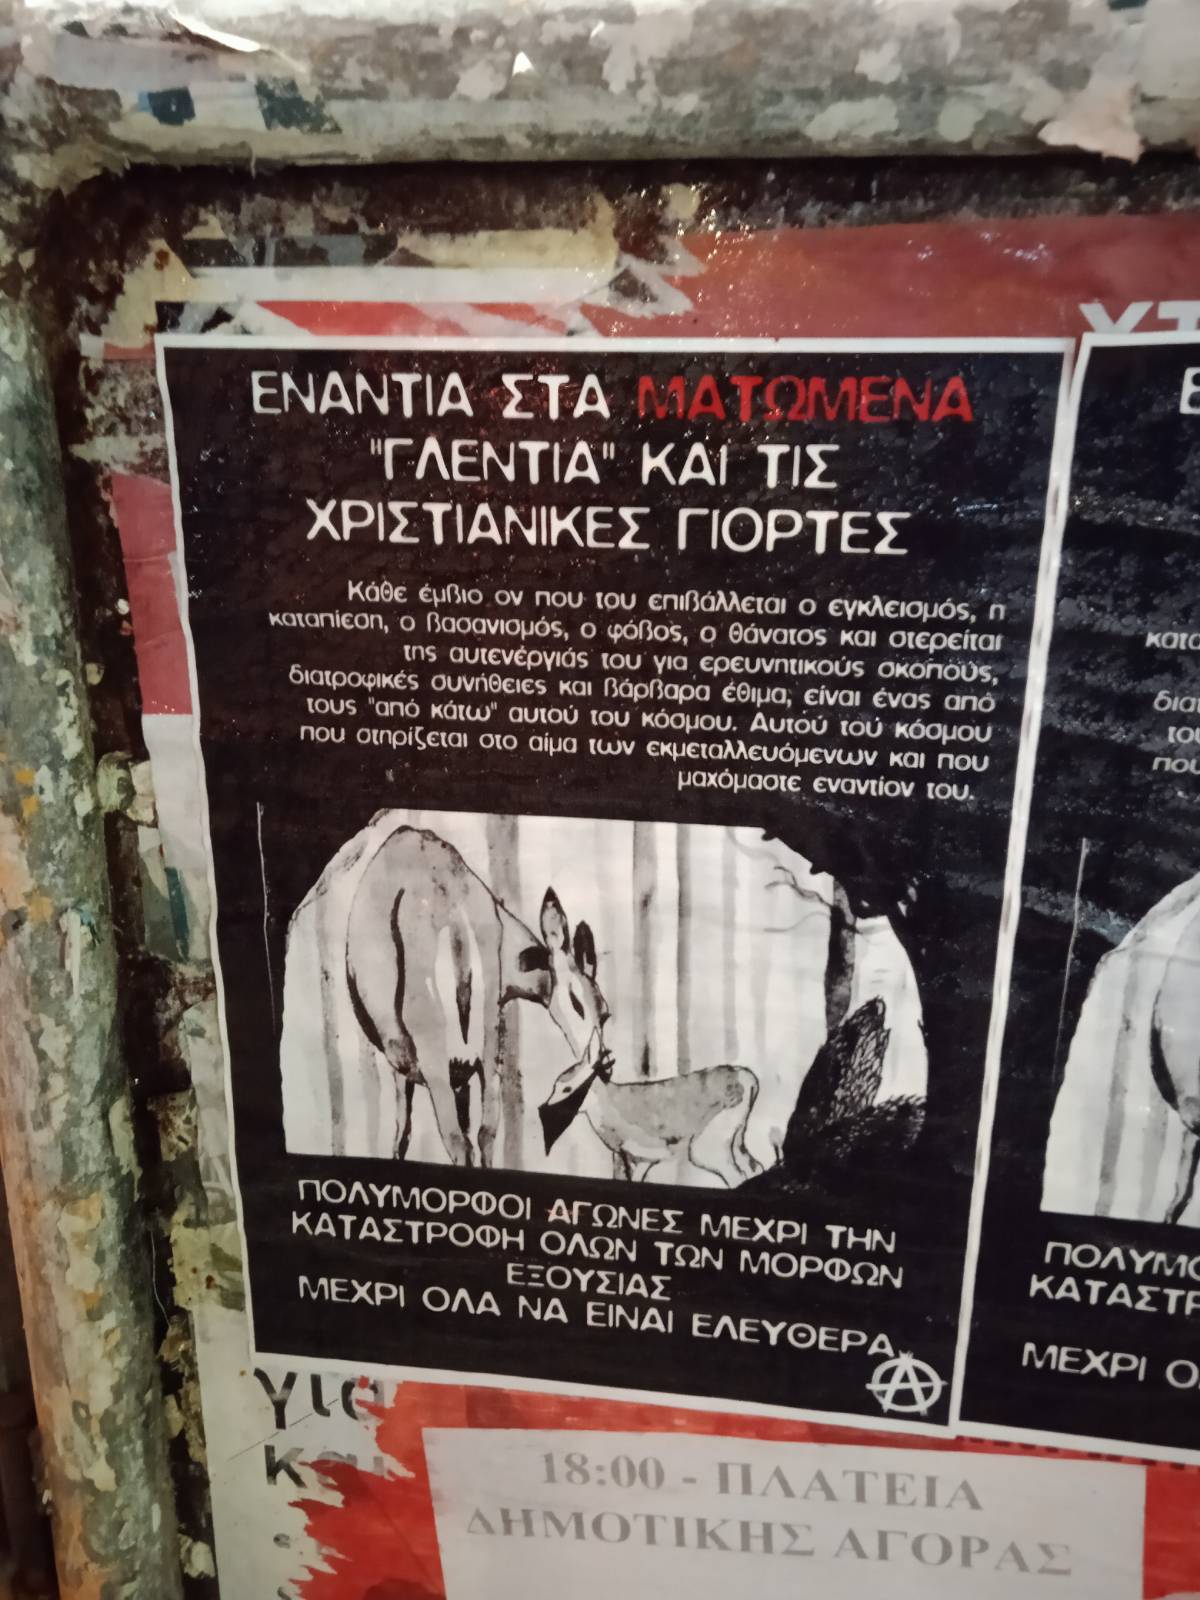 Χανιά: Αφίσα ενάντια στα ματωμένα γλέντια